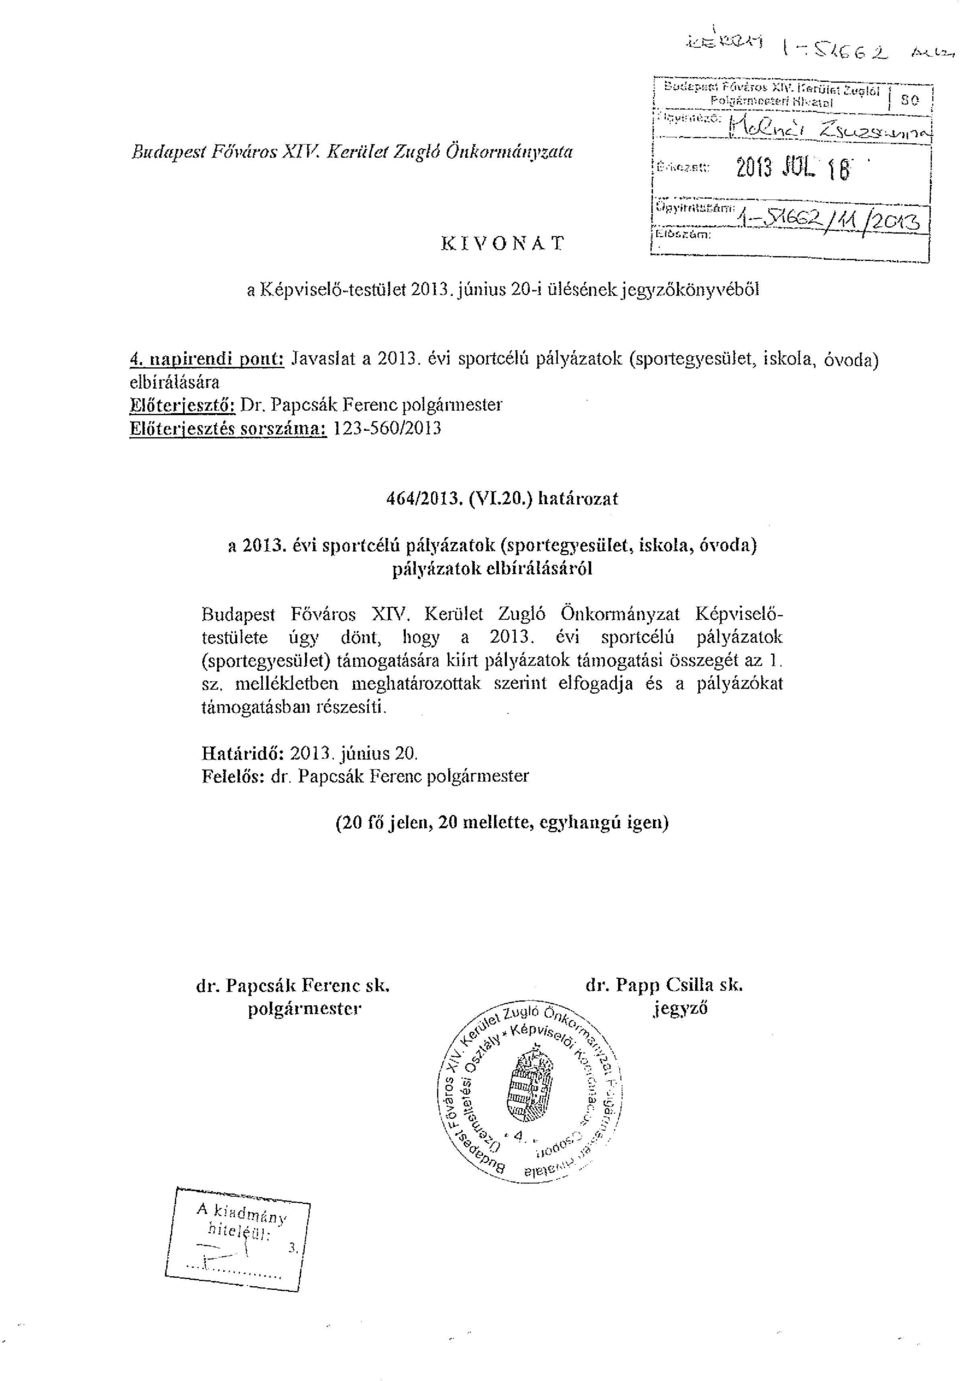 Papcsák Ferenc polgármester Előterjesztés sorszáma: 123-560/2013 464/2013. (VI.20.) határozat a 2013.